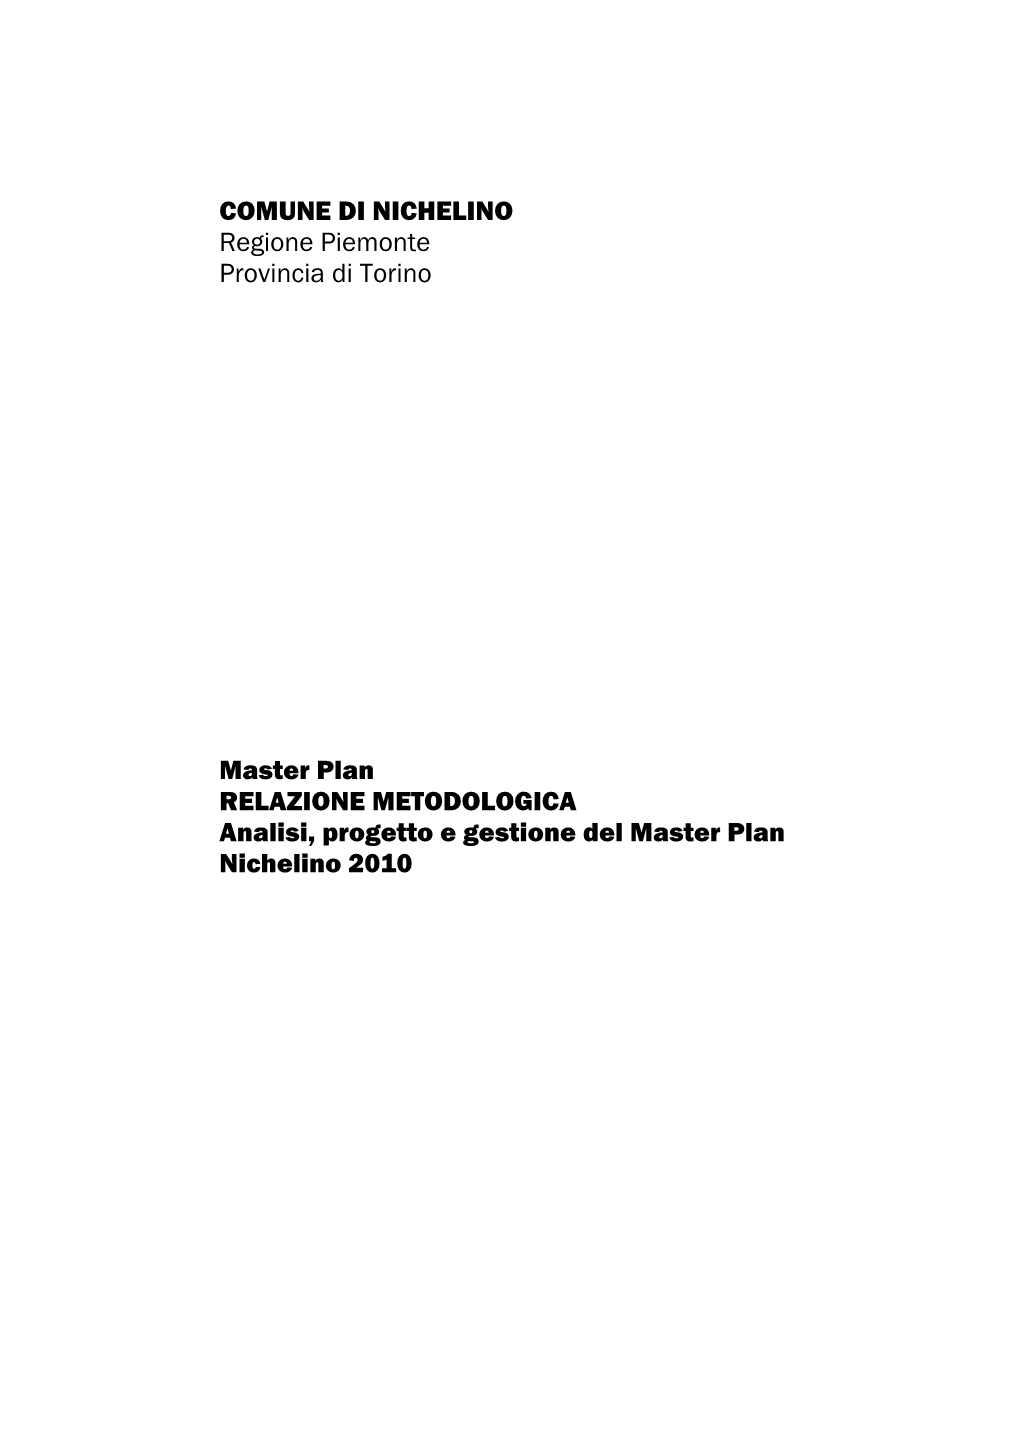 RELAZIONE METODOLOGICA Analisi, Progetto E Gestione Del Master Plan Nichelino 2010